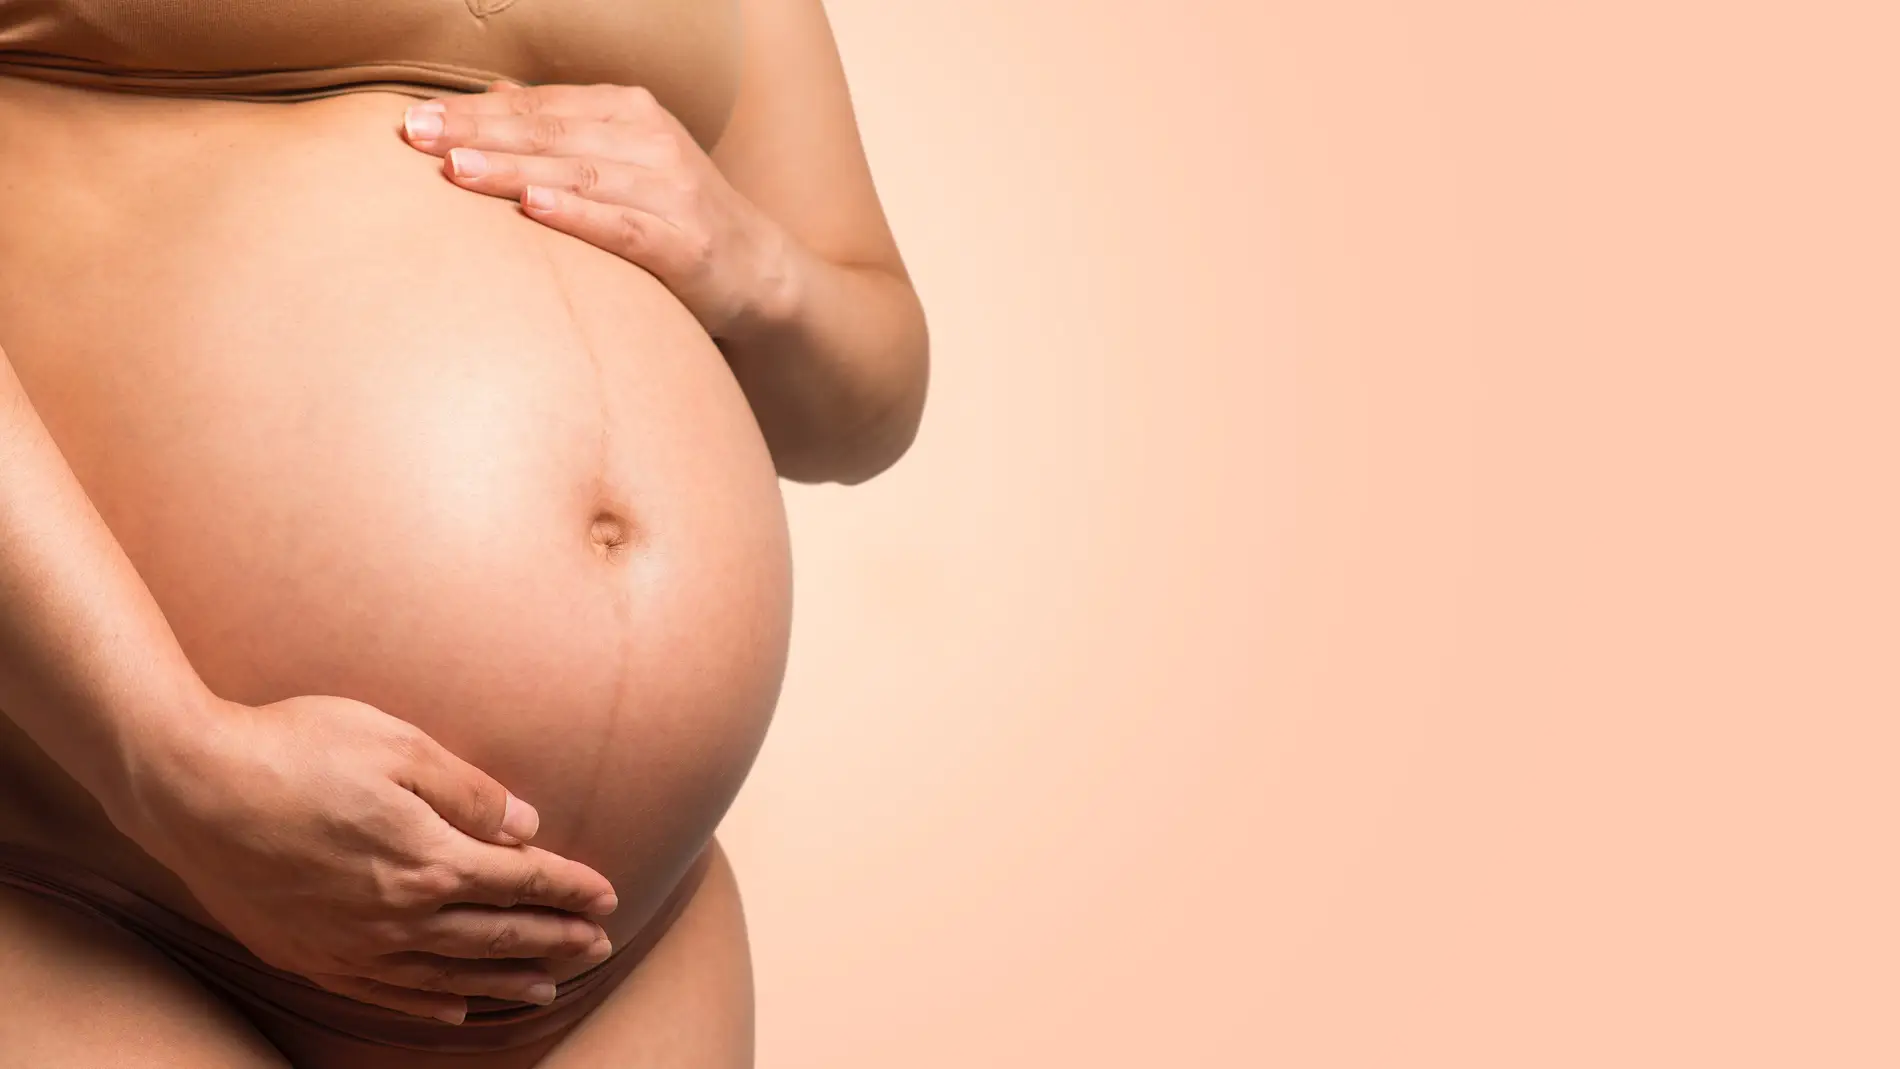 BORRADOR ¿Es el gazpacho un alimento de riesgo durante el embarazo